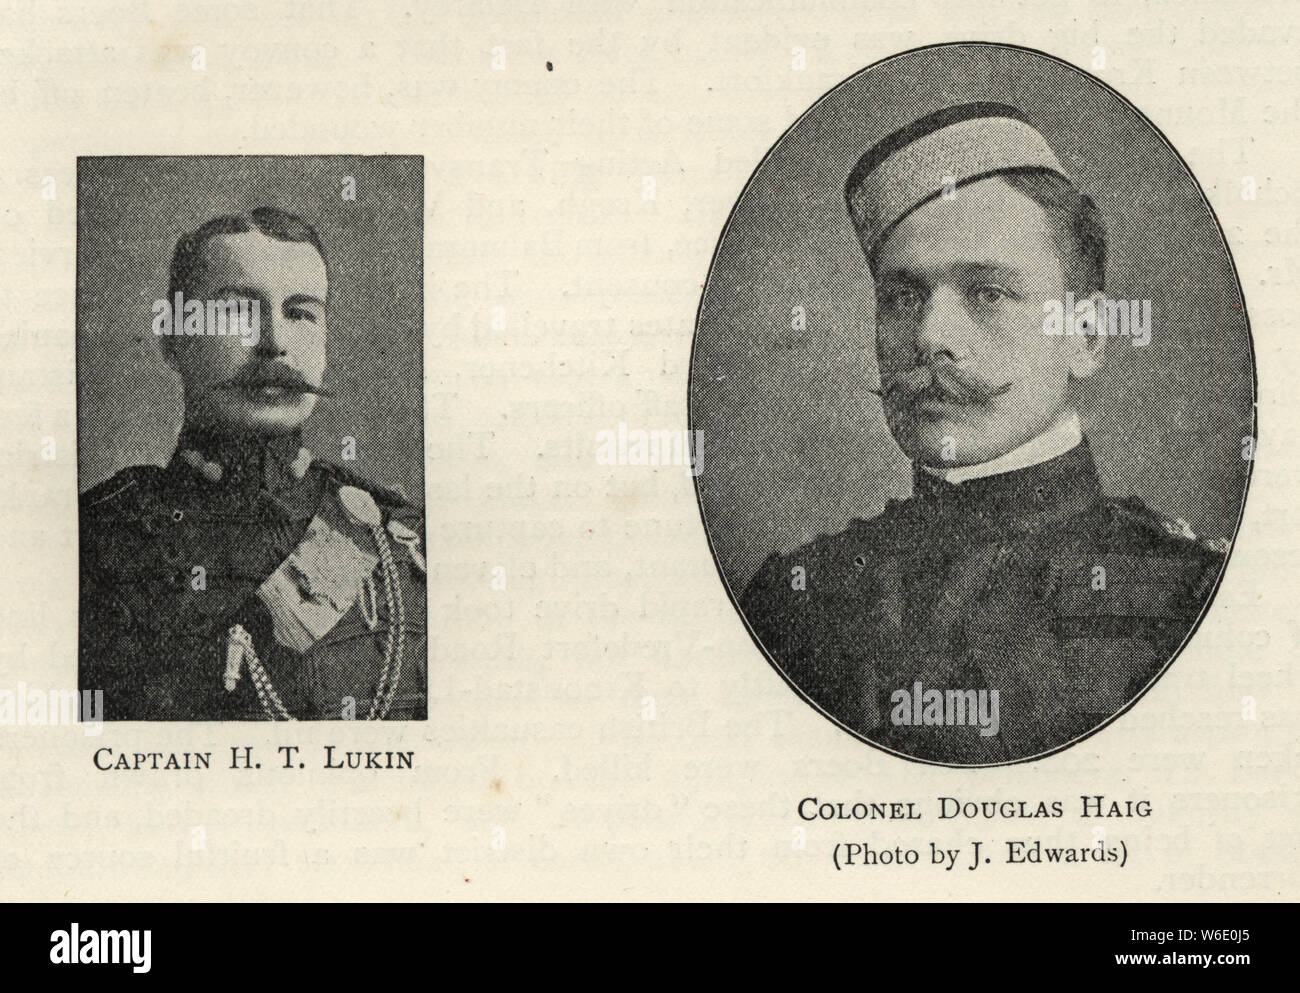 Kapitän H T Lukin und Colonel Douglas Haig, Britische Offiziere der Armee, 1901 Stockfoto